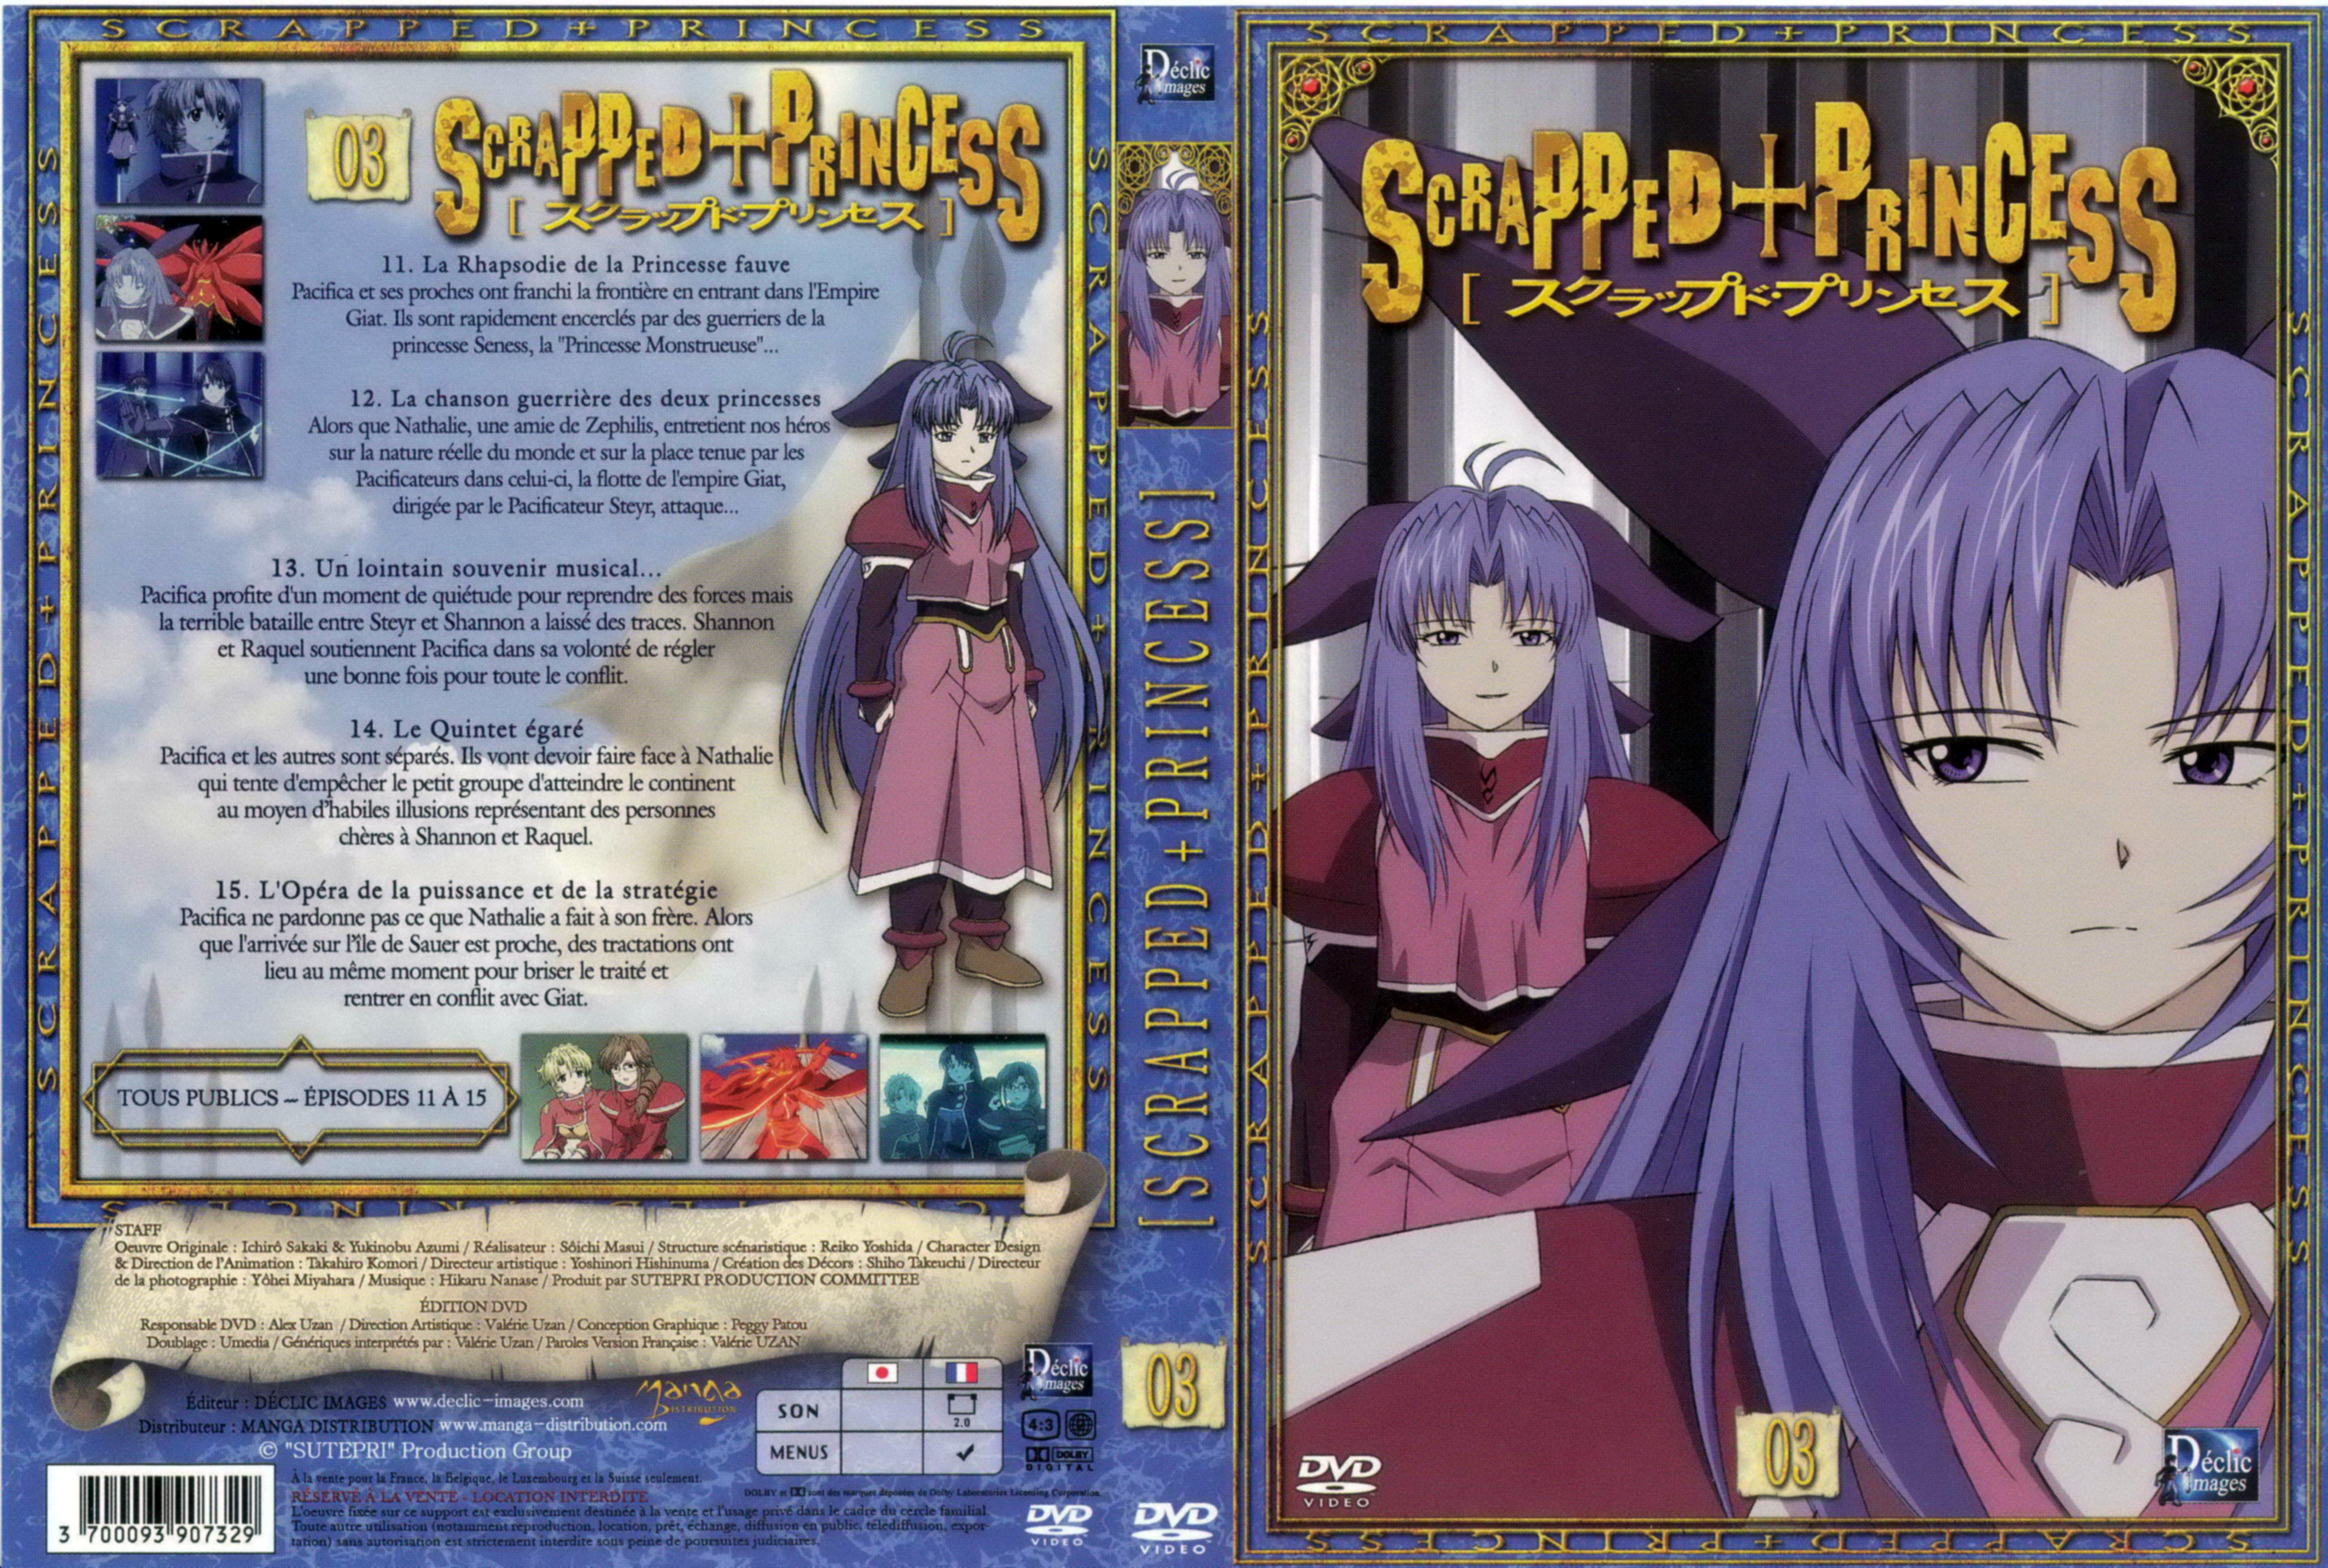 Jaquette DVD Scrapped princess vol 03 v2